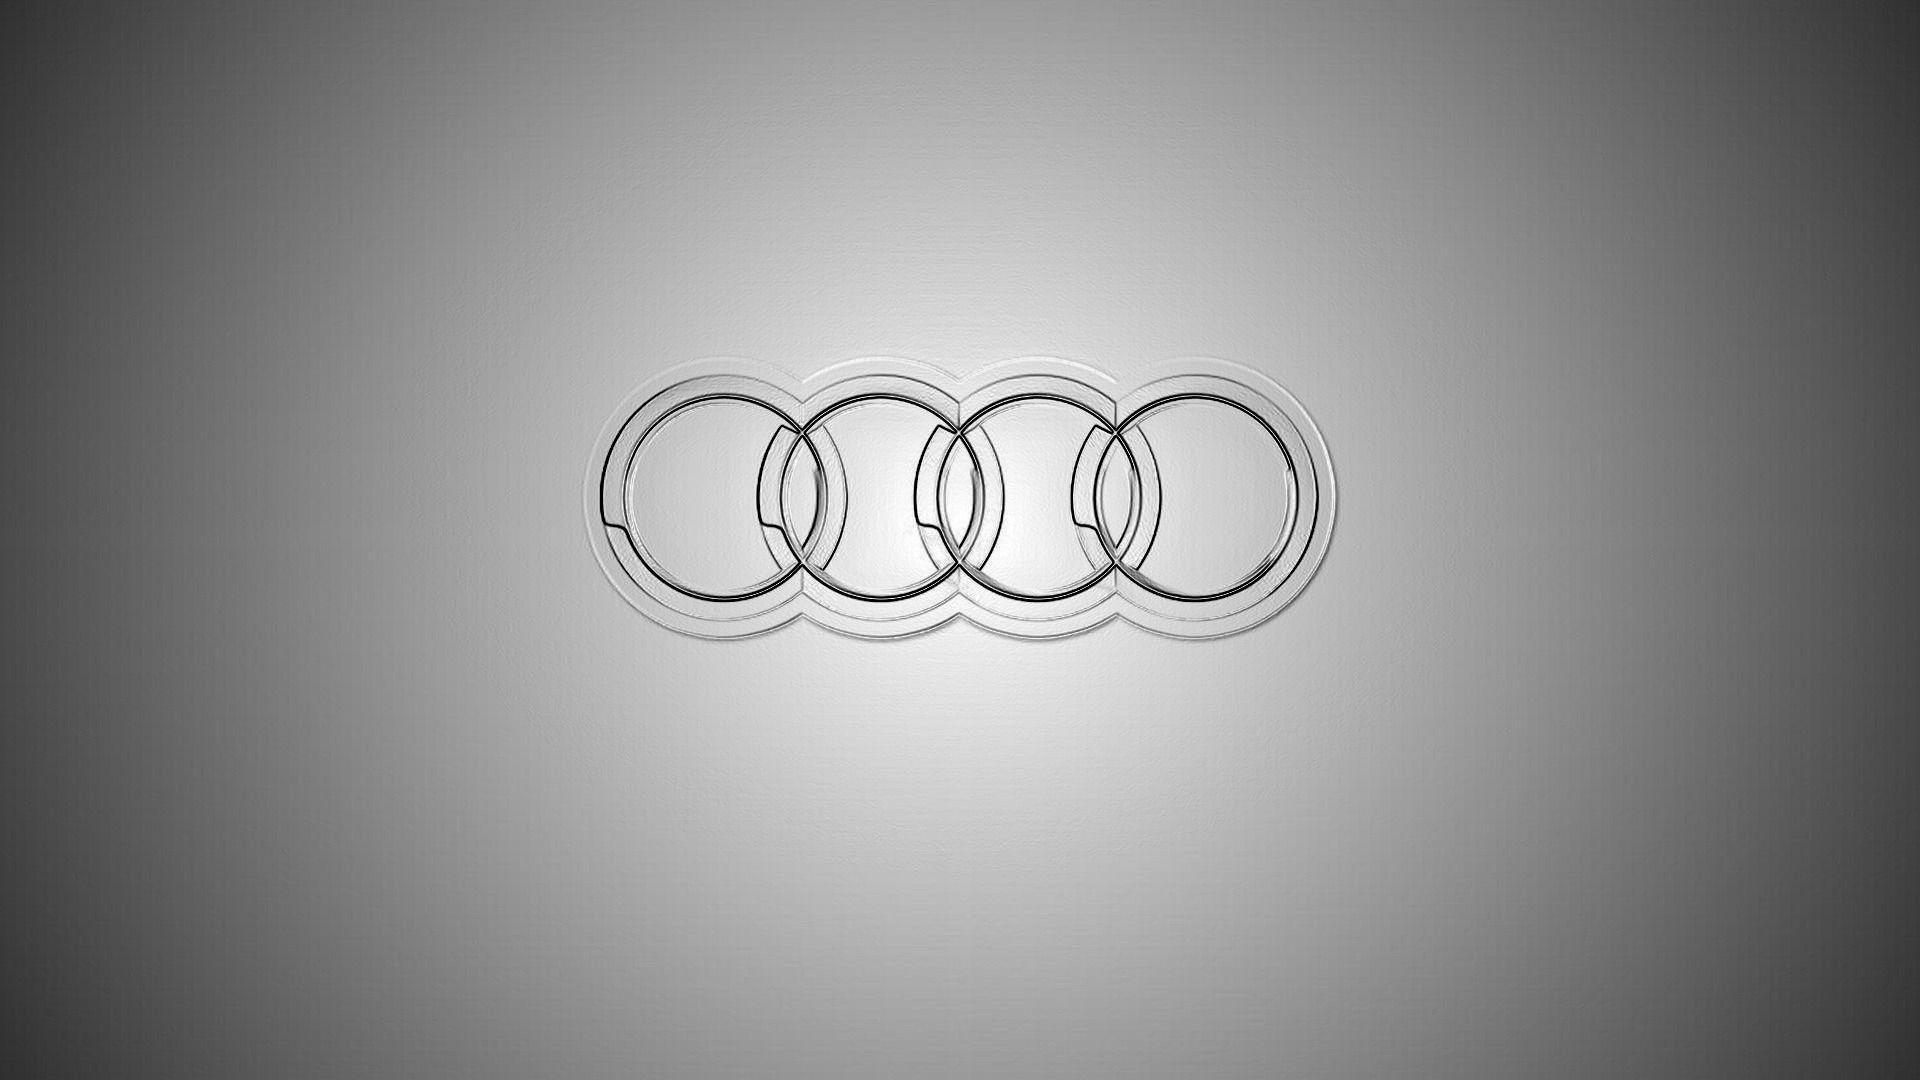 Audi Glass Logo Wallpaper by HD Wallpaper Daily